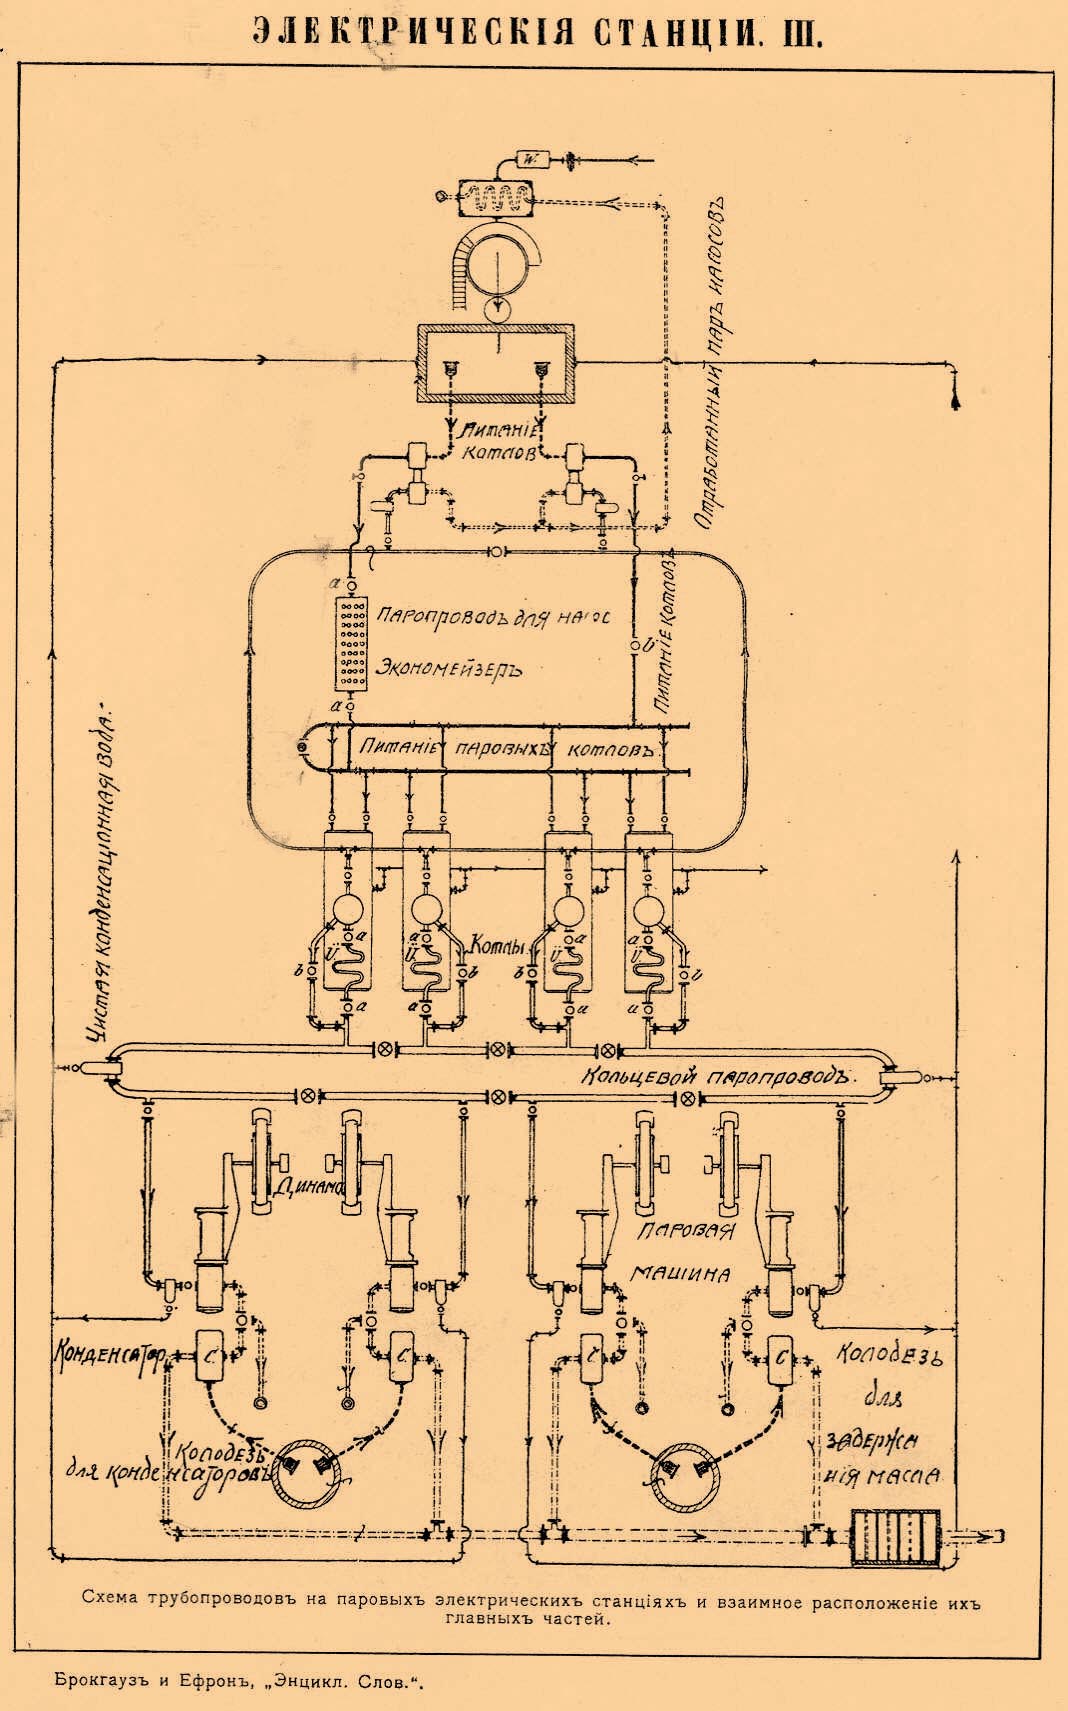 ЭЛЕКТРИЧЕСКИЕ СТАНЦИИ III. Схема трубопороводов на паровых электрических станциях и взаимное расположение их главных частей.